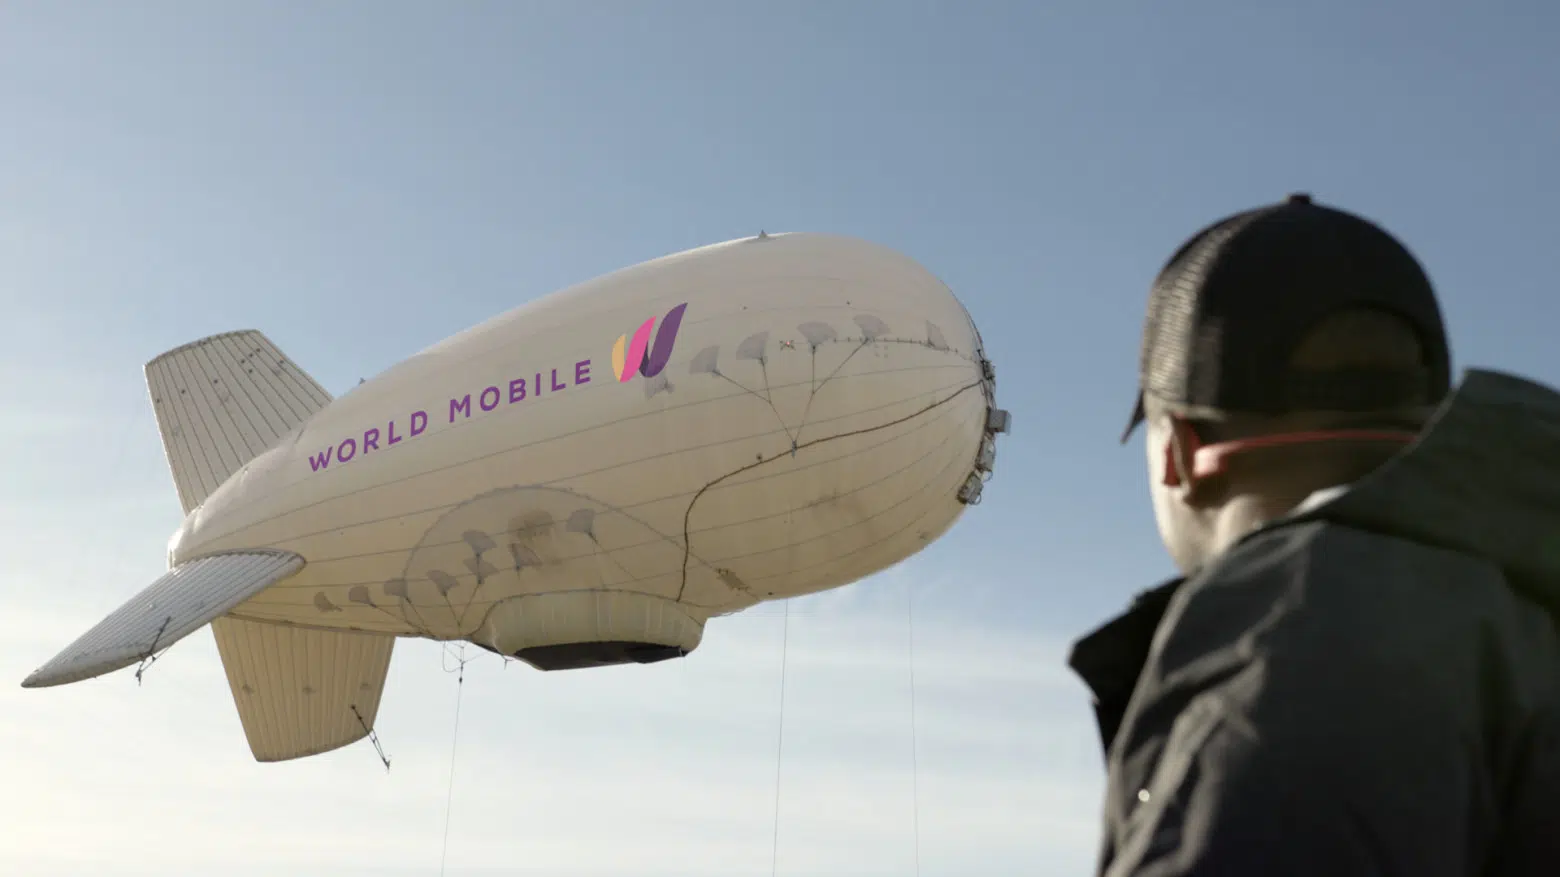 Аэростаты и воздушные шары. Как раздают интернет в воде и в космосе Google и WorldMobile